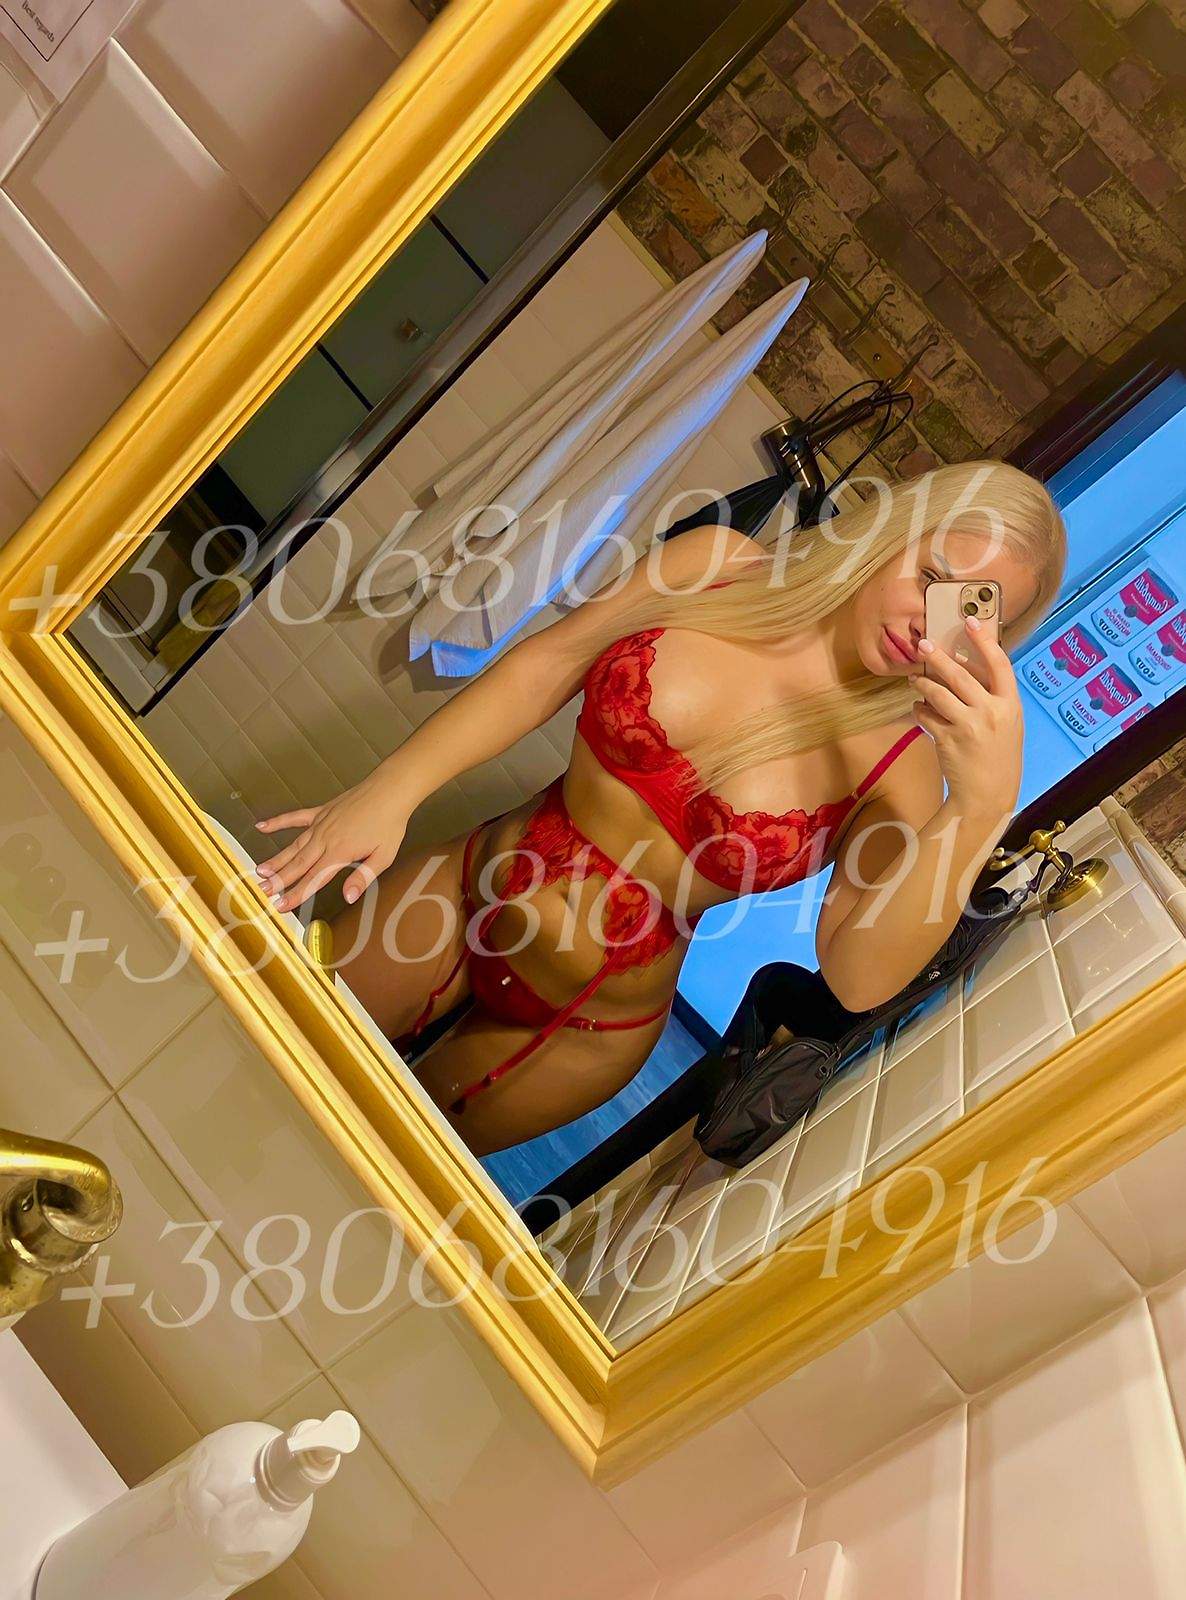 Проститутка Алинка, фото 7, тел: 0681604916. В центре города - Киев